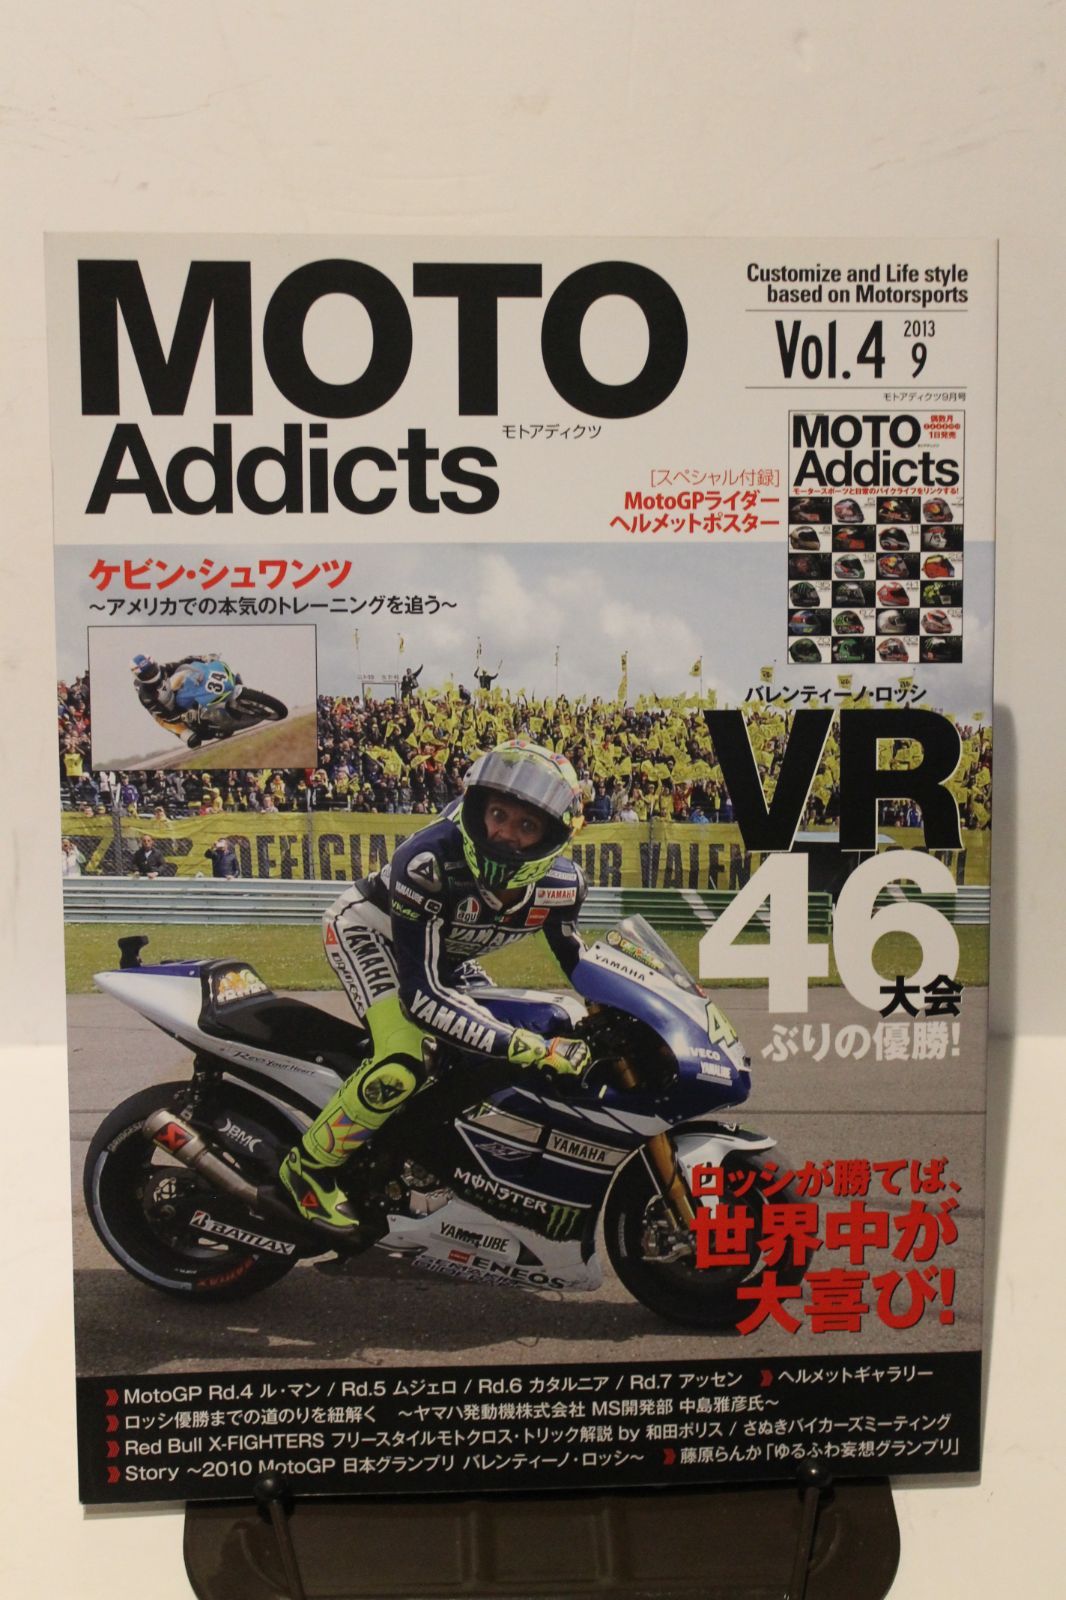 MOTO　2013　メルカリ　Vol.4　ボルドール書房　Addicts　モトアディクツ